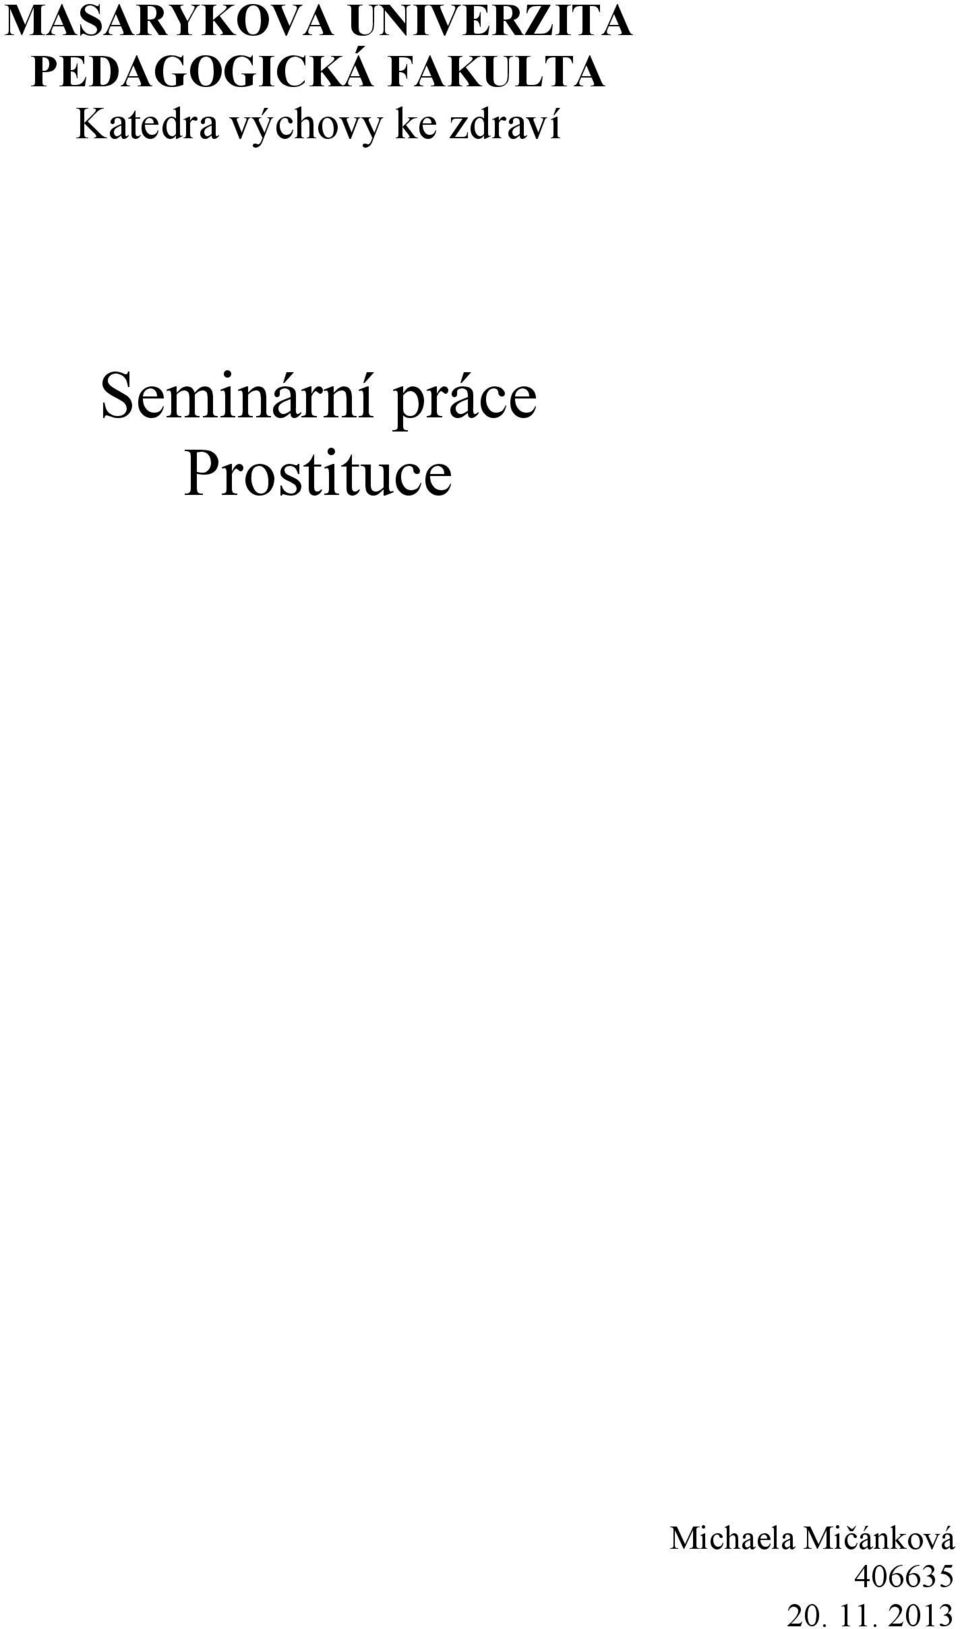 Seminární práce Prostituce